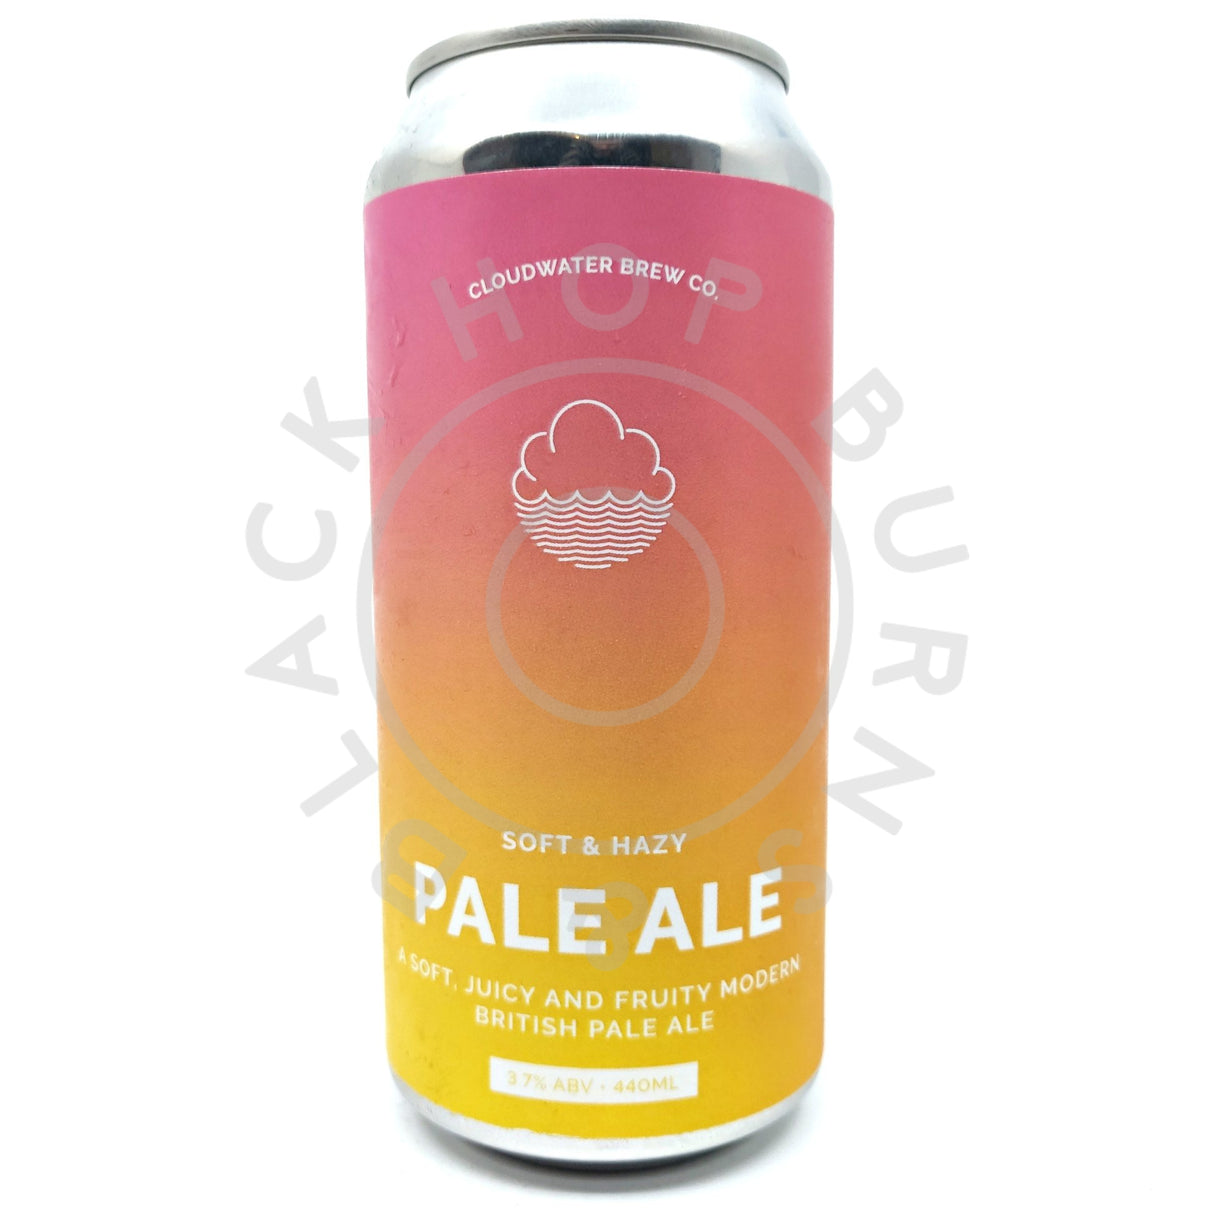 Cloudwater Pale Ale 3.7% (440ml can)-Hop Burns & Black